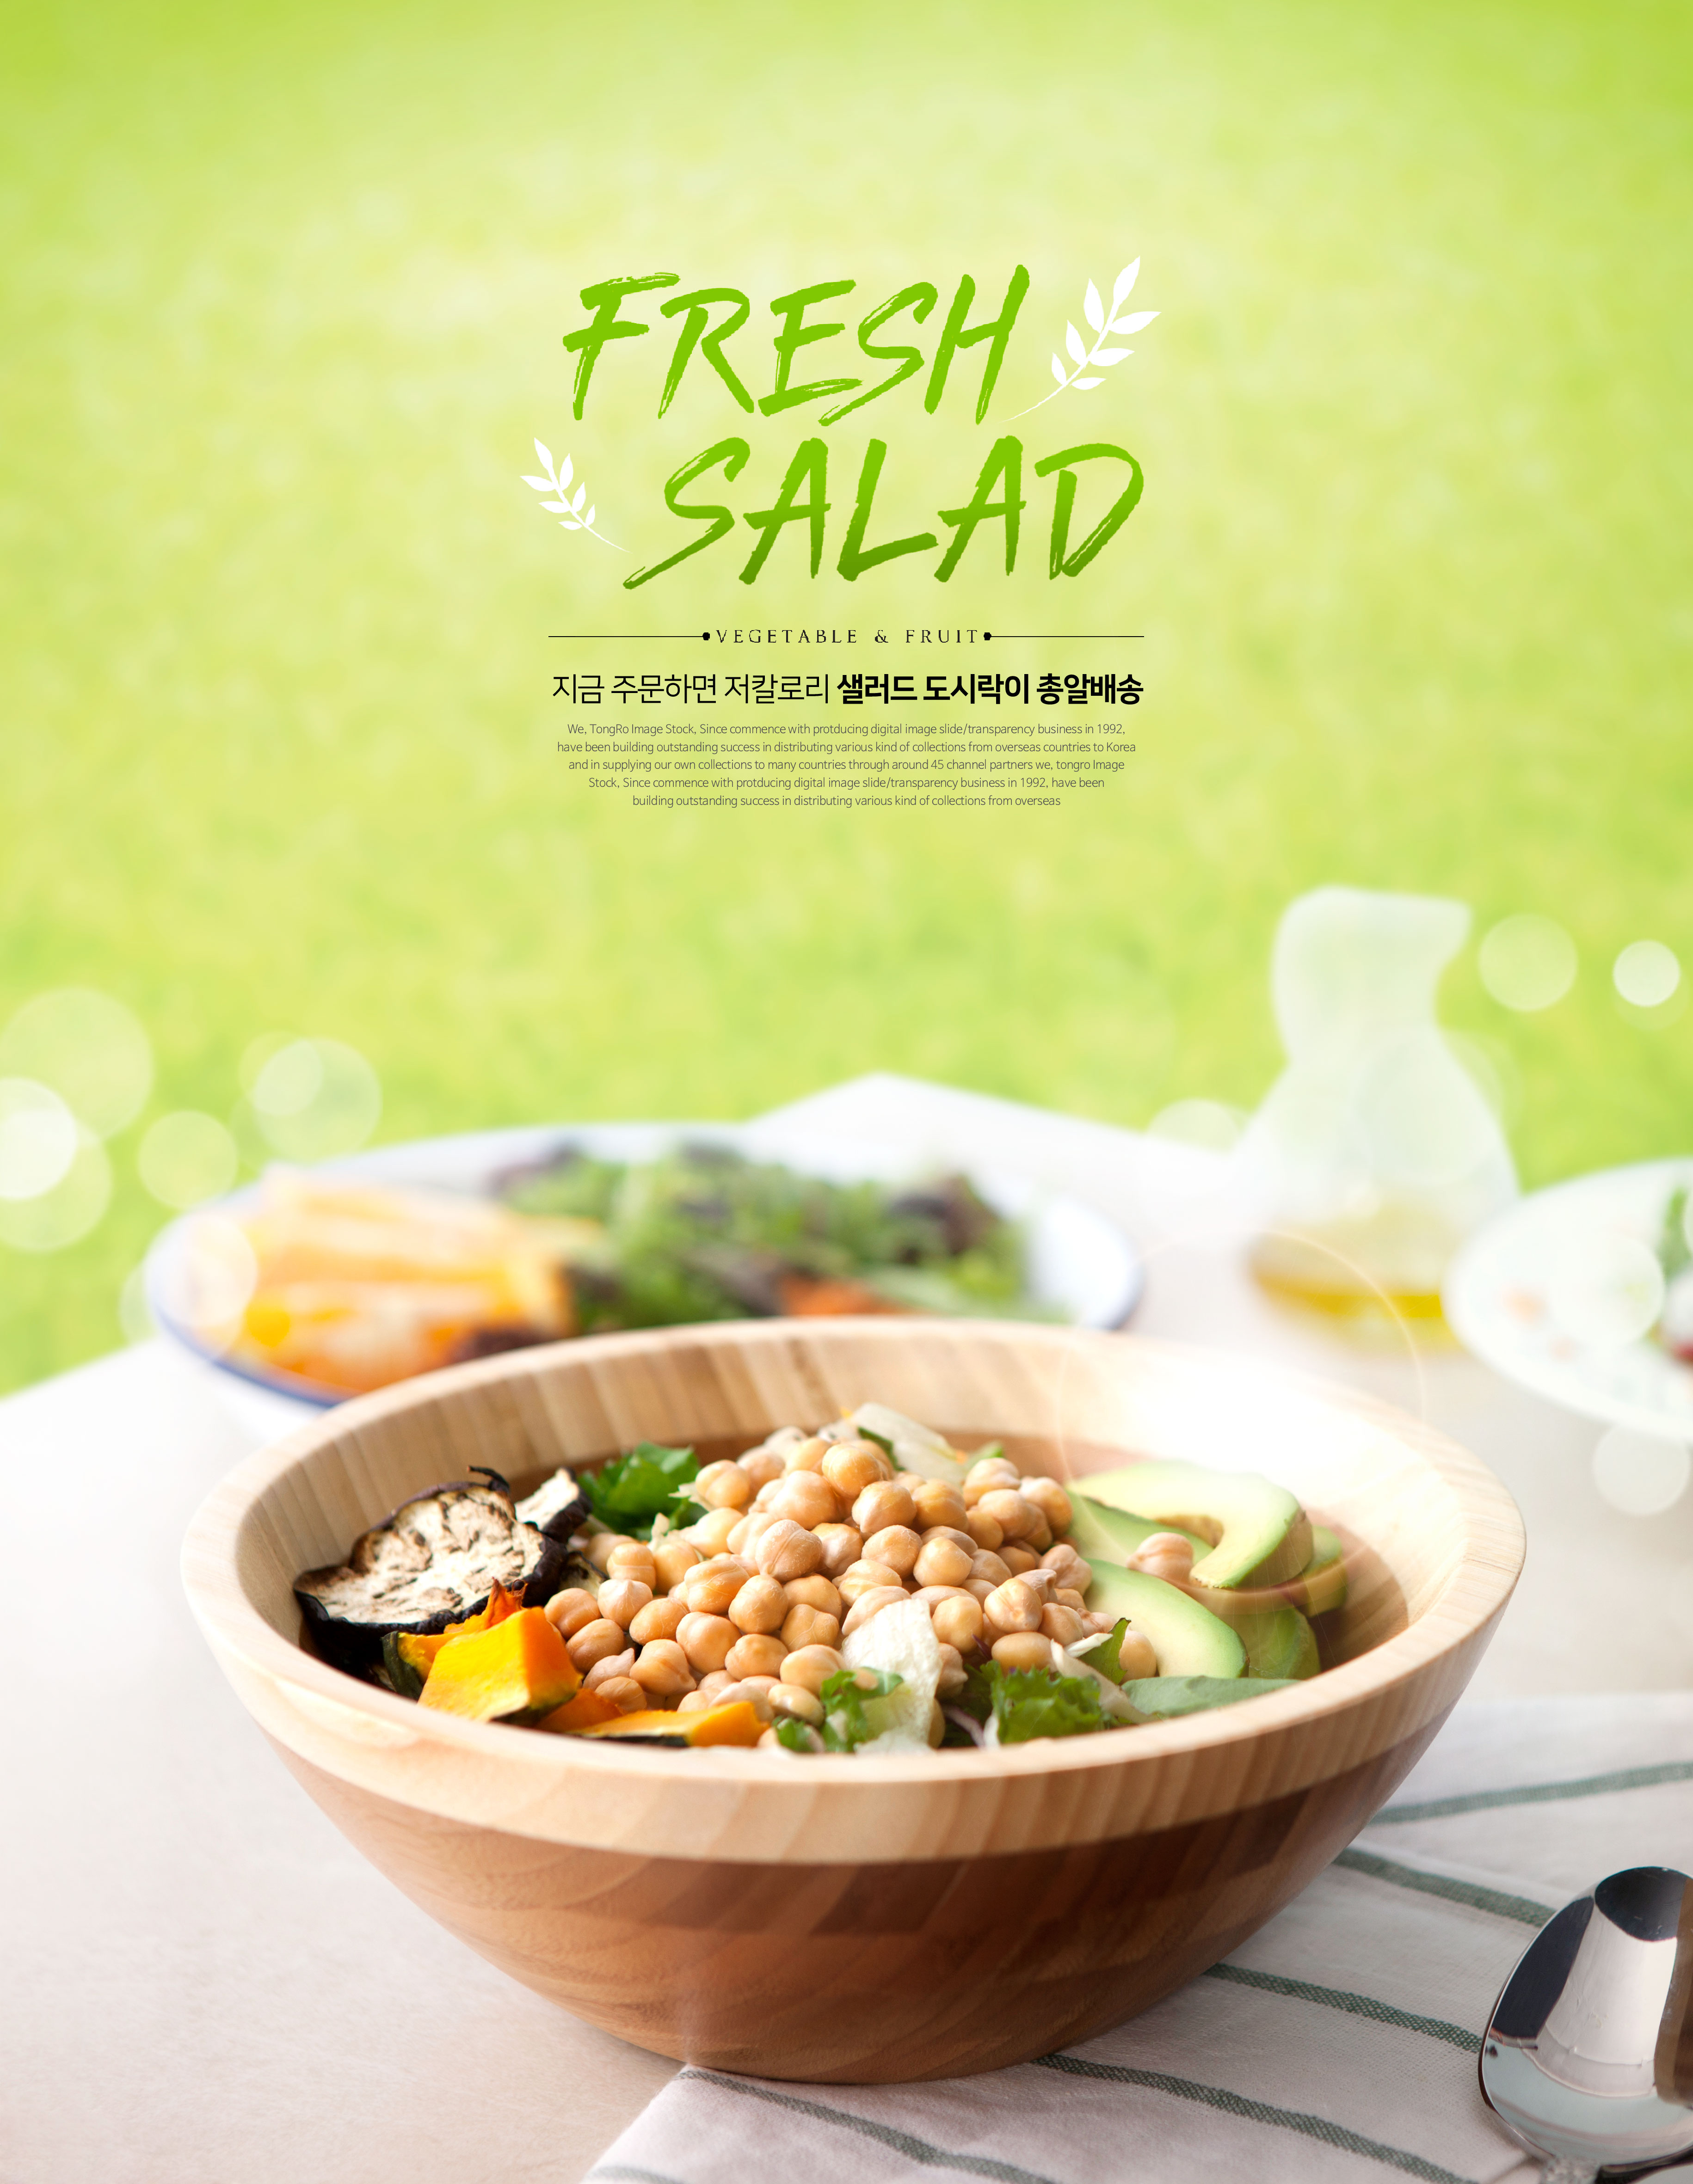 新鲜沙拉低热量食品广告海报psd模板插图